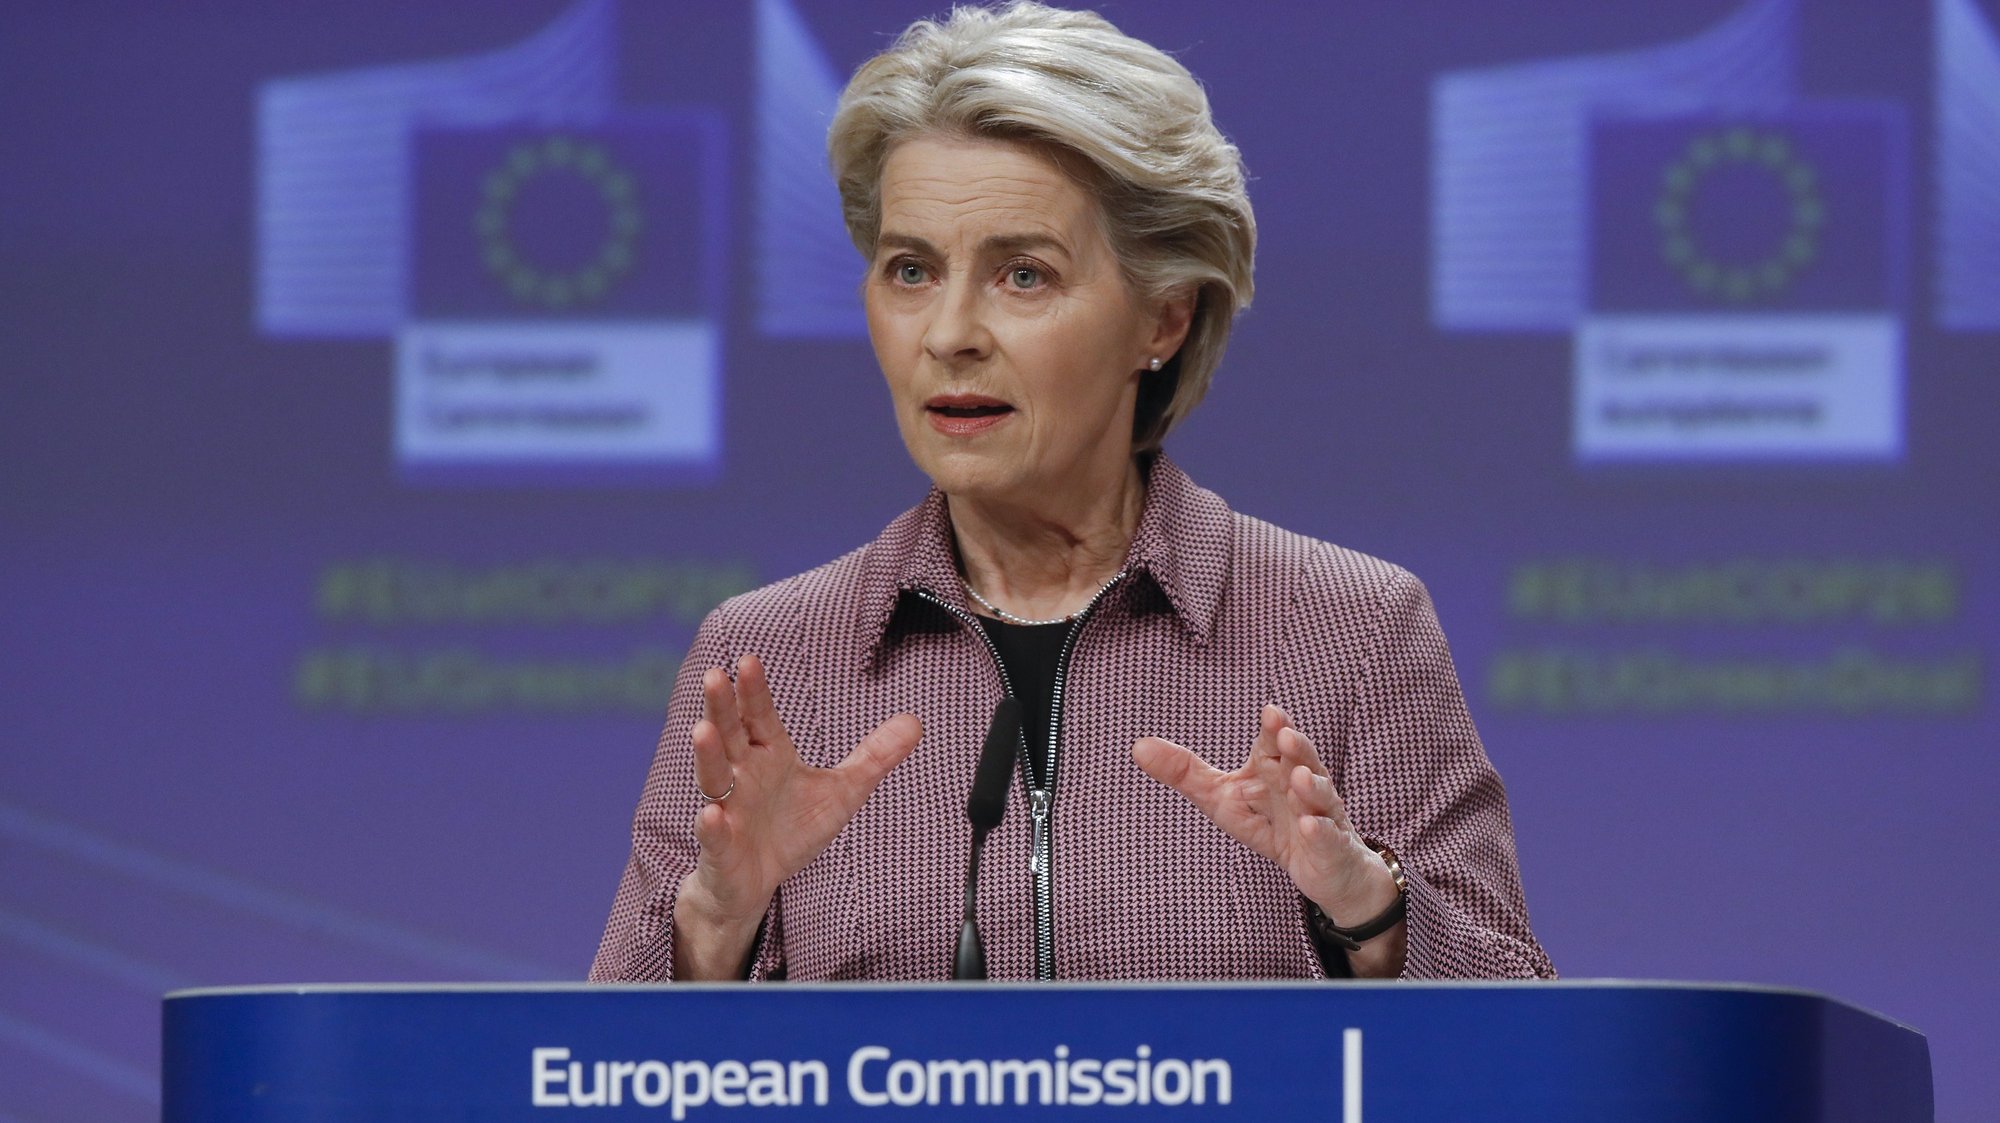 European Commission President von der Leyen